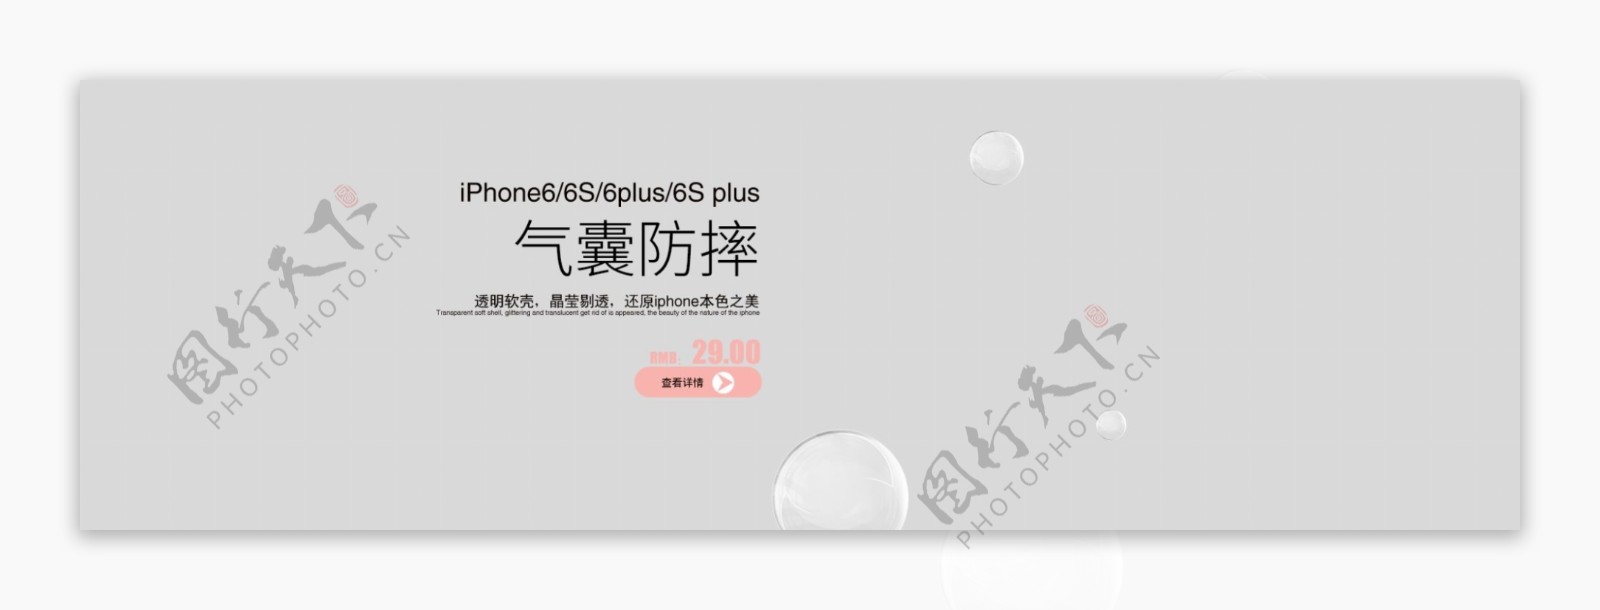 商务风格手机壳电商海报banner